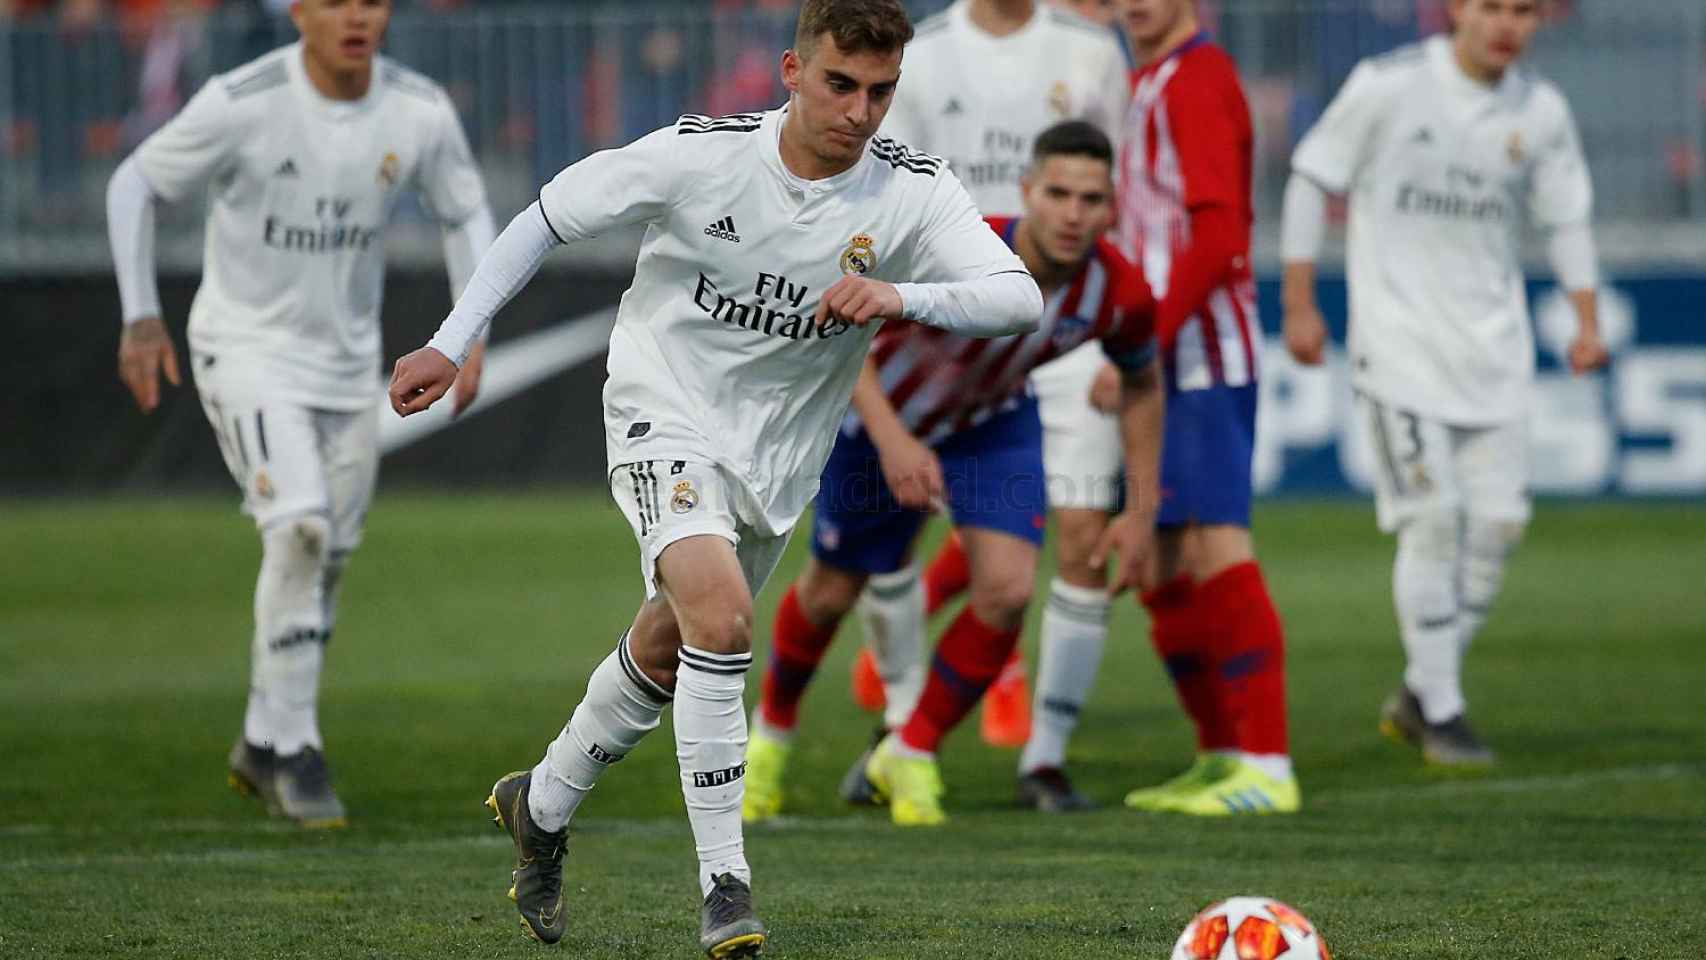 Alberto, del Real Madrid Juvenil A, lanza un penalti ante el Atlético de Madrid en la UEFA Youth League